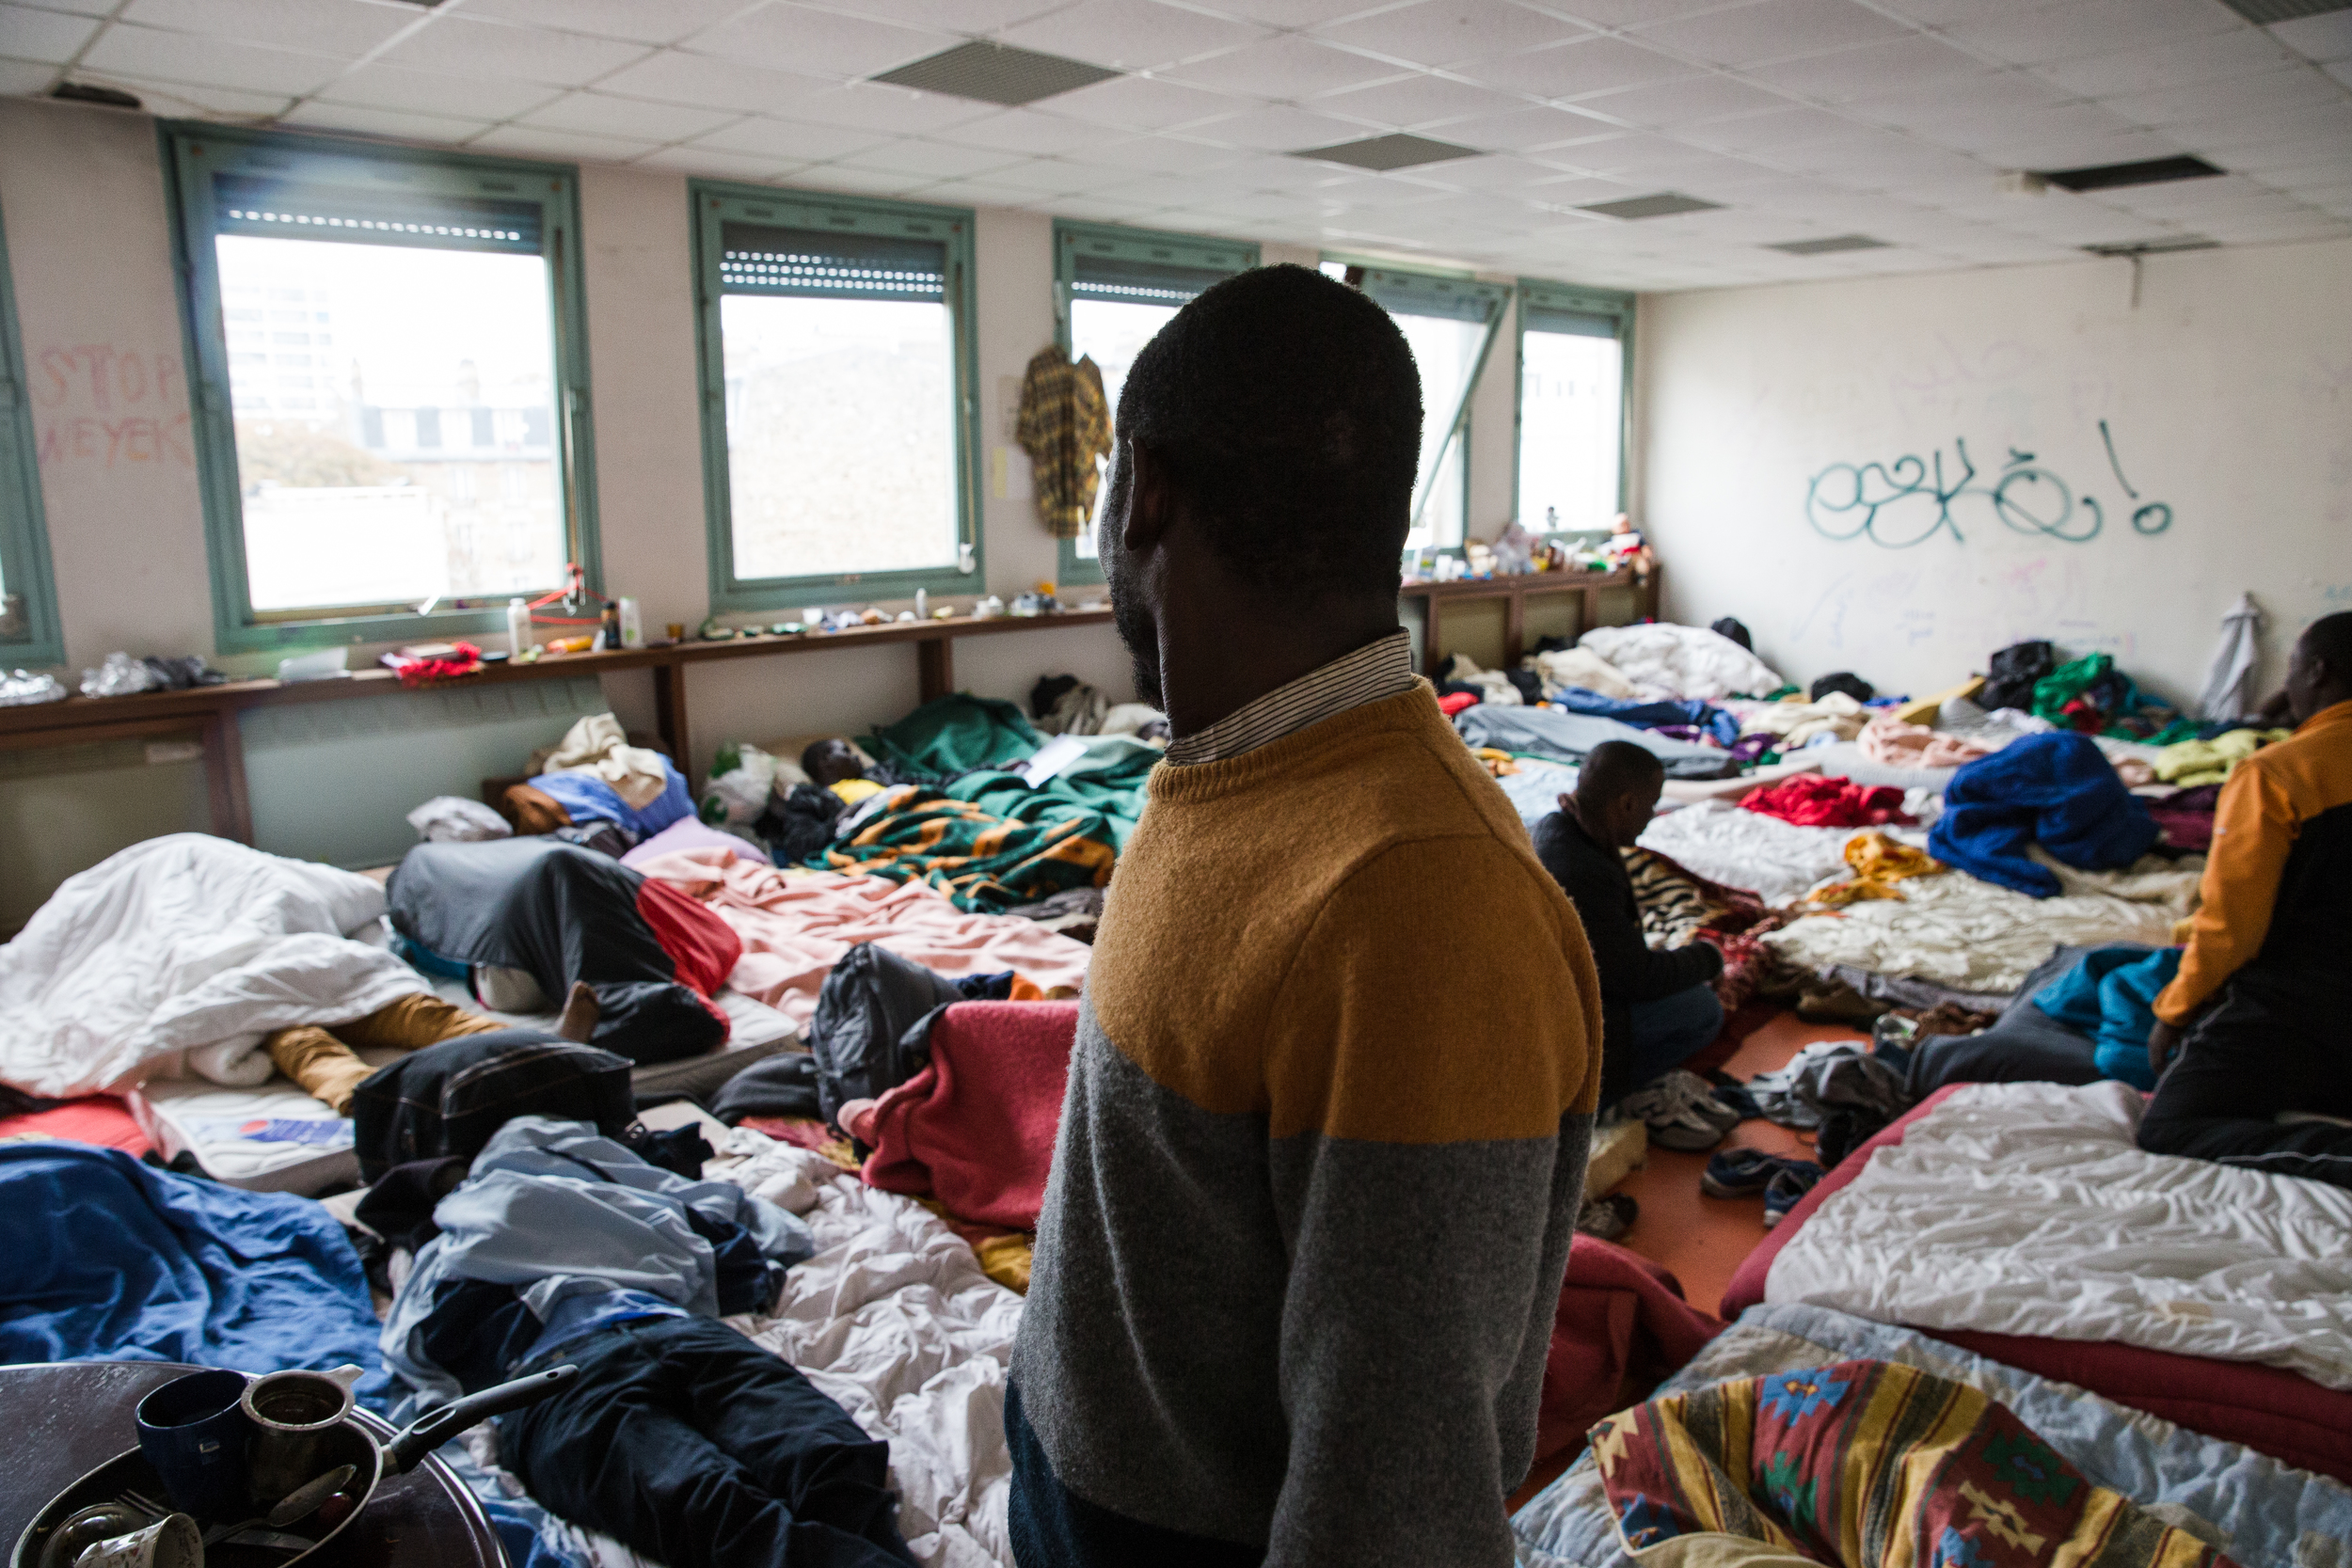   Des dizaines de personnes dorment dans cette salle de classe. Les réfugiés se regroupent par nationalité. Ceux-ci sont tous soudanais.  